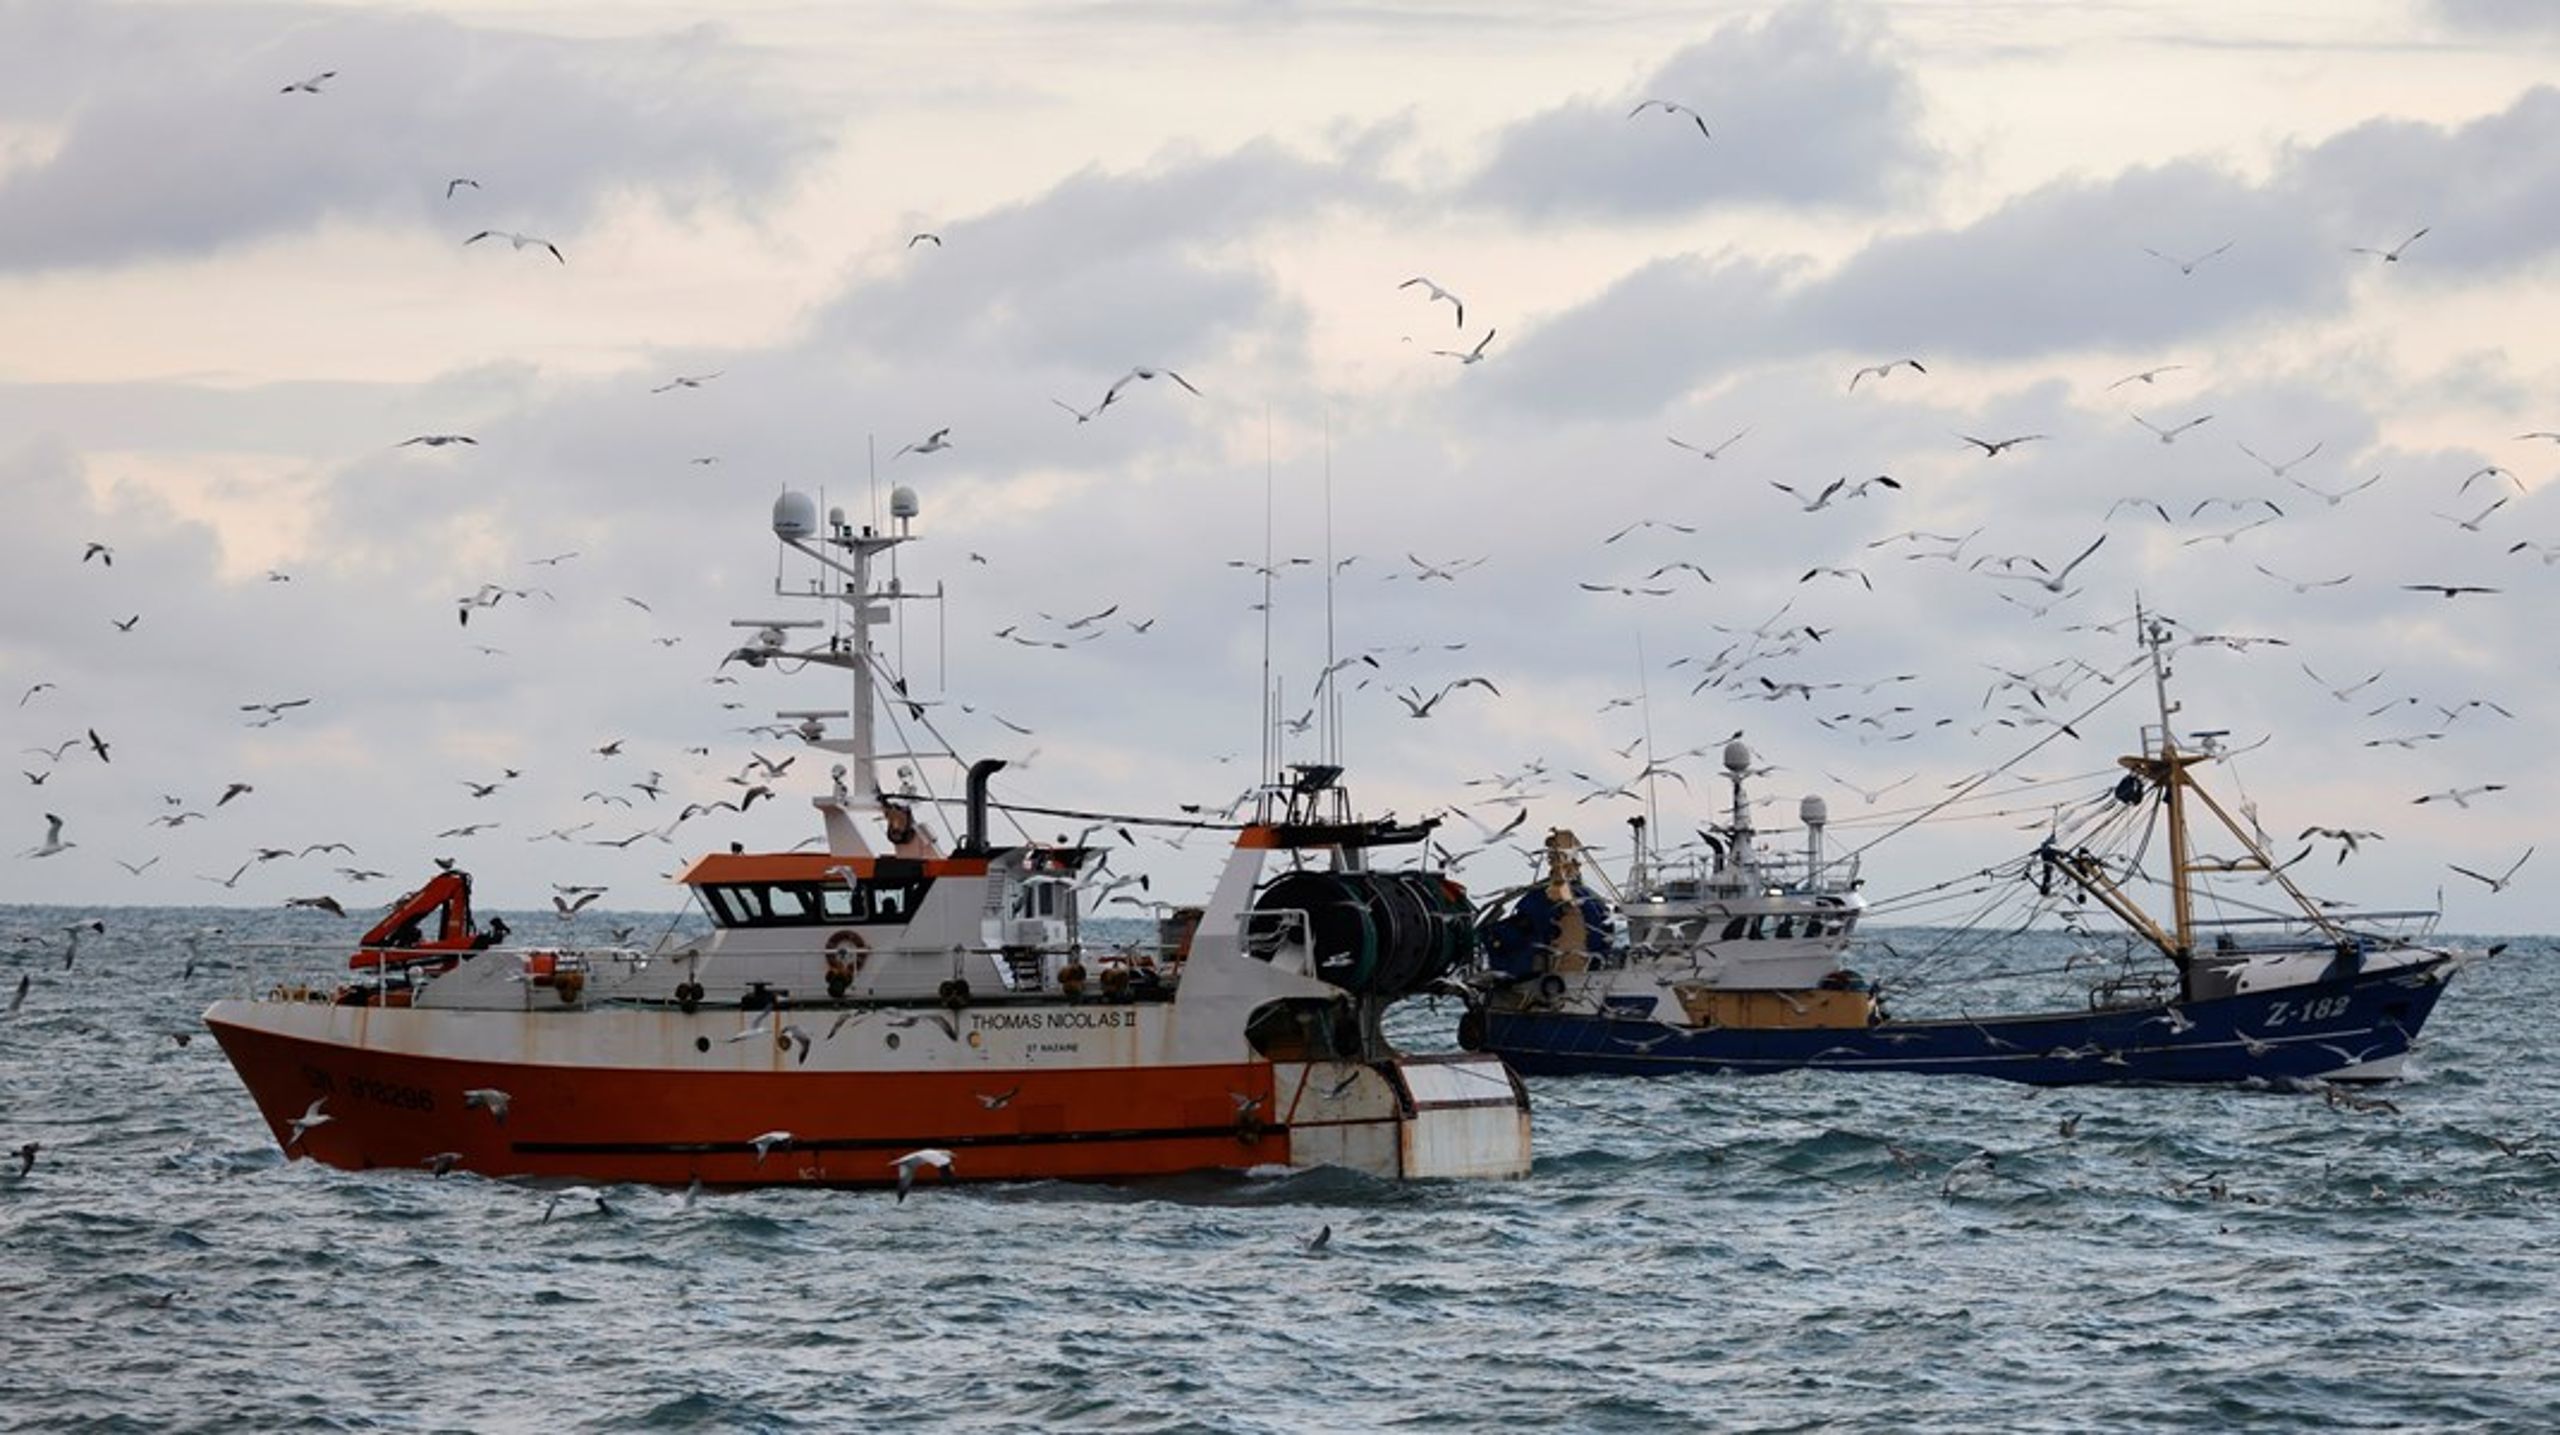 Danmarks
Naturfredningsforenings kampagne er fyldt af postulater om&nbsp;bundtrawlings skade på havmiljøet, skriver&nbsp;Kristian
Bøgsted (DD).